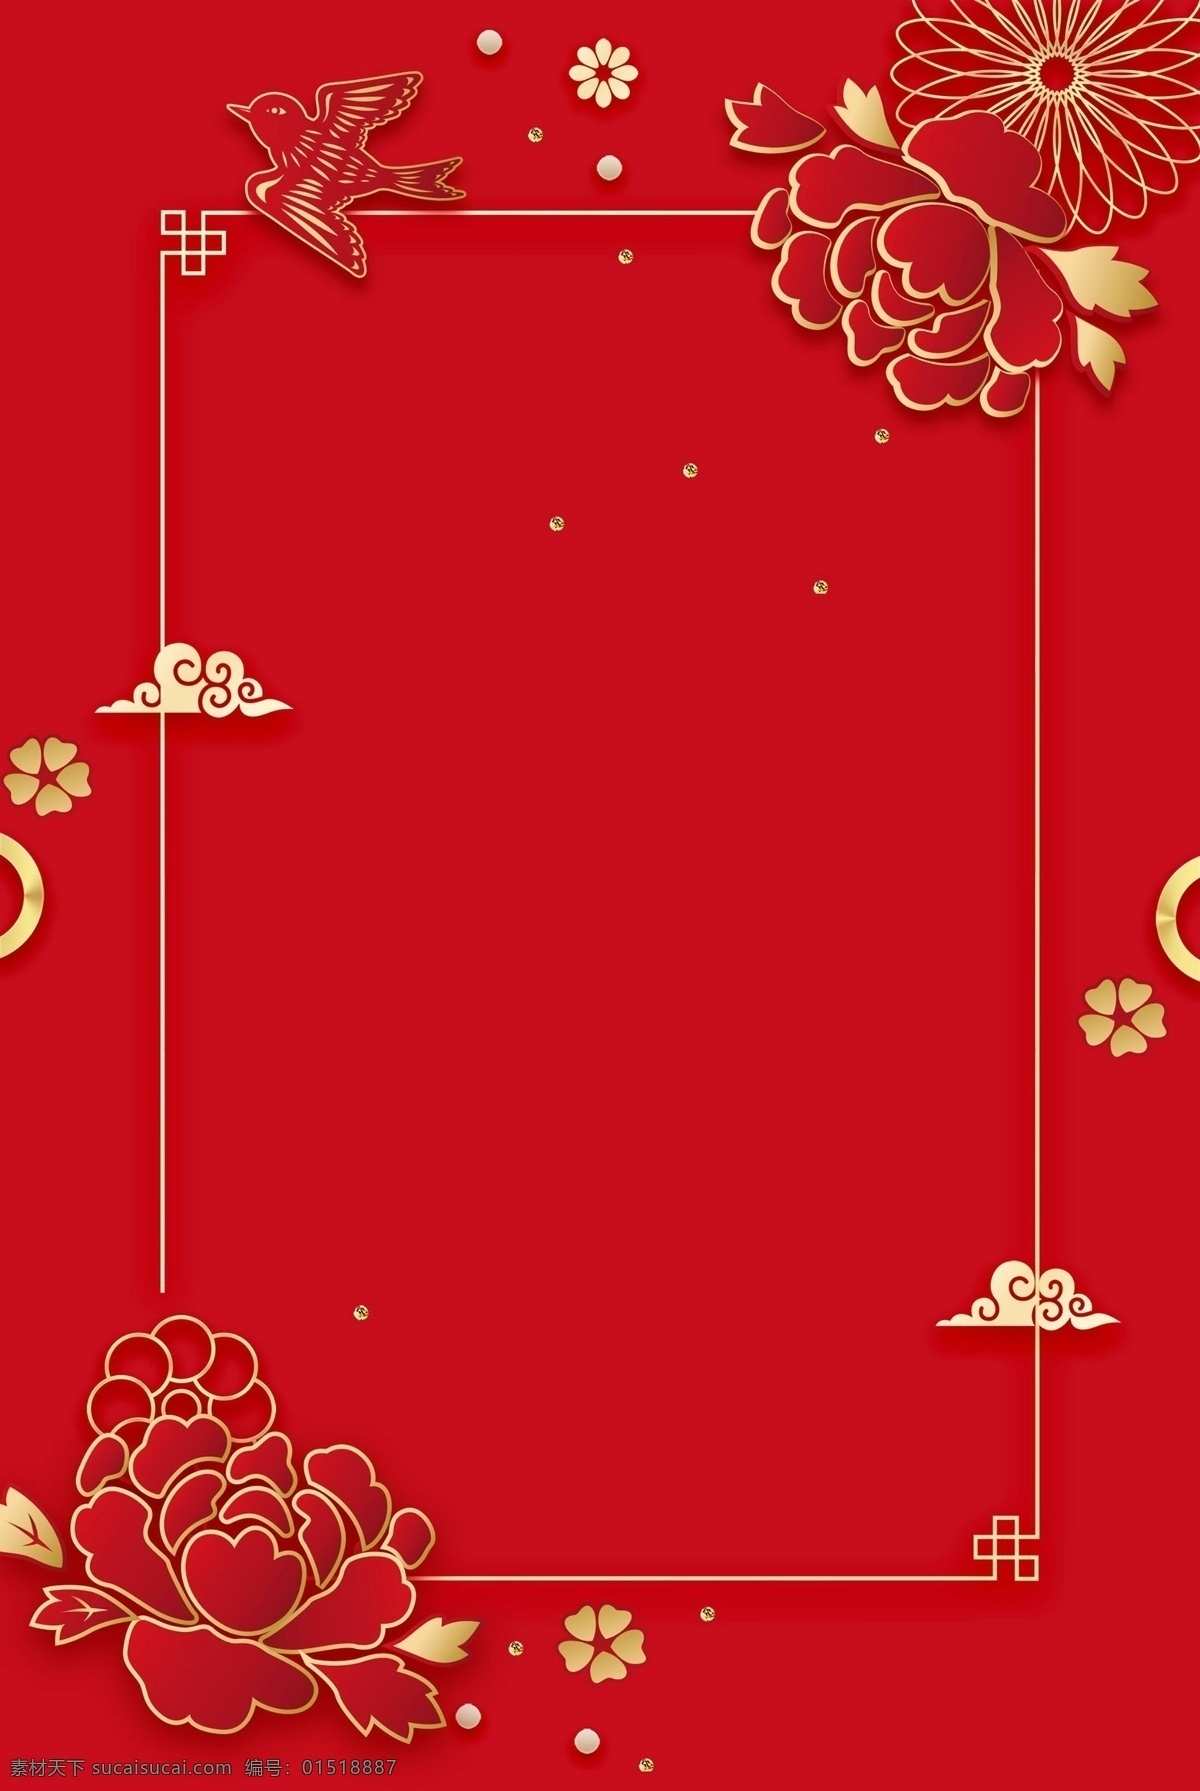 中国 风 红色 花朵 底纹 感恩节 背景 祥云 温馨 牡丹 感恩有你 感恩节广告 感恩节促销 活动 感恩节主题 背景设计